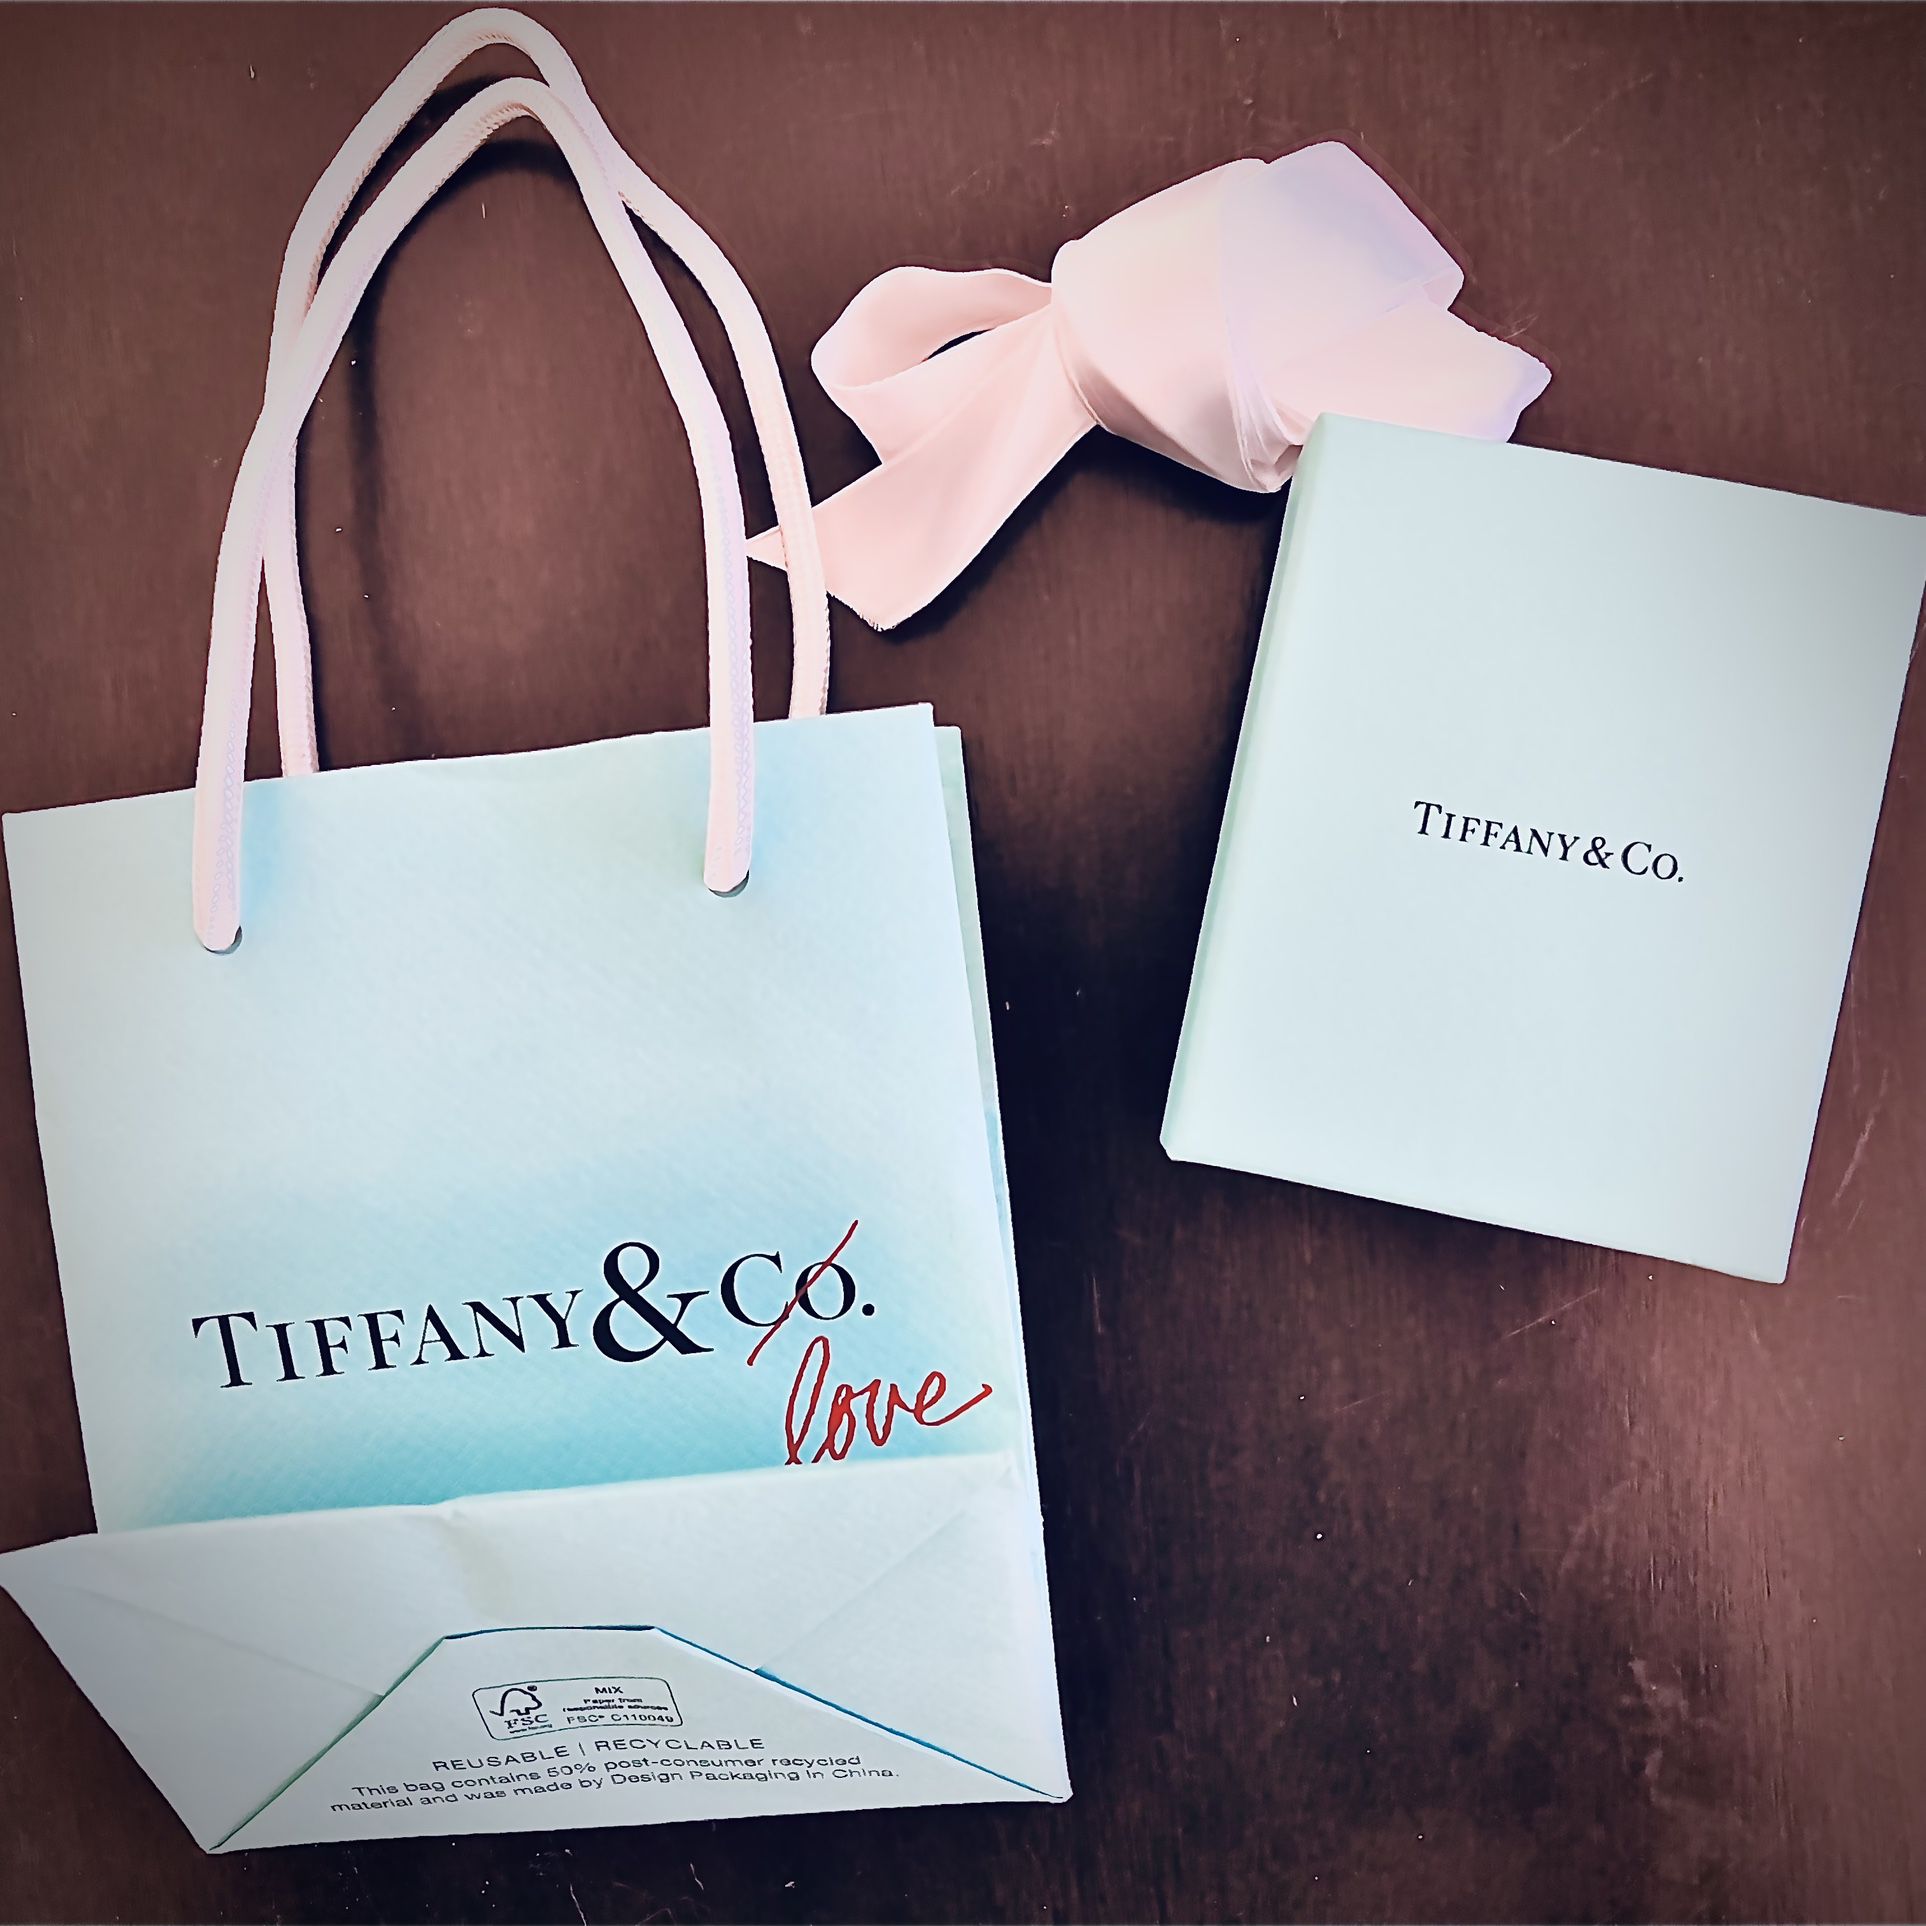 Tiffany & co. Small gift bag, gift box and ribbon